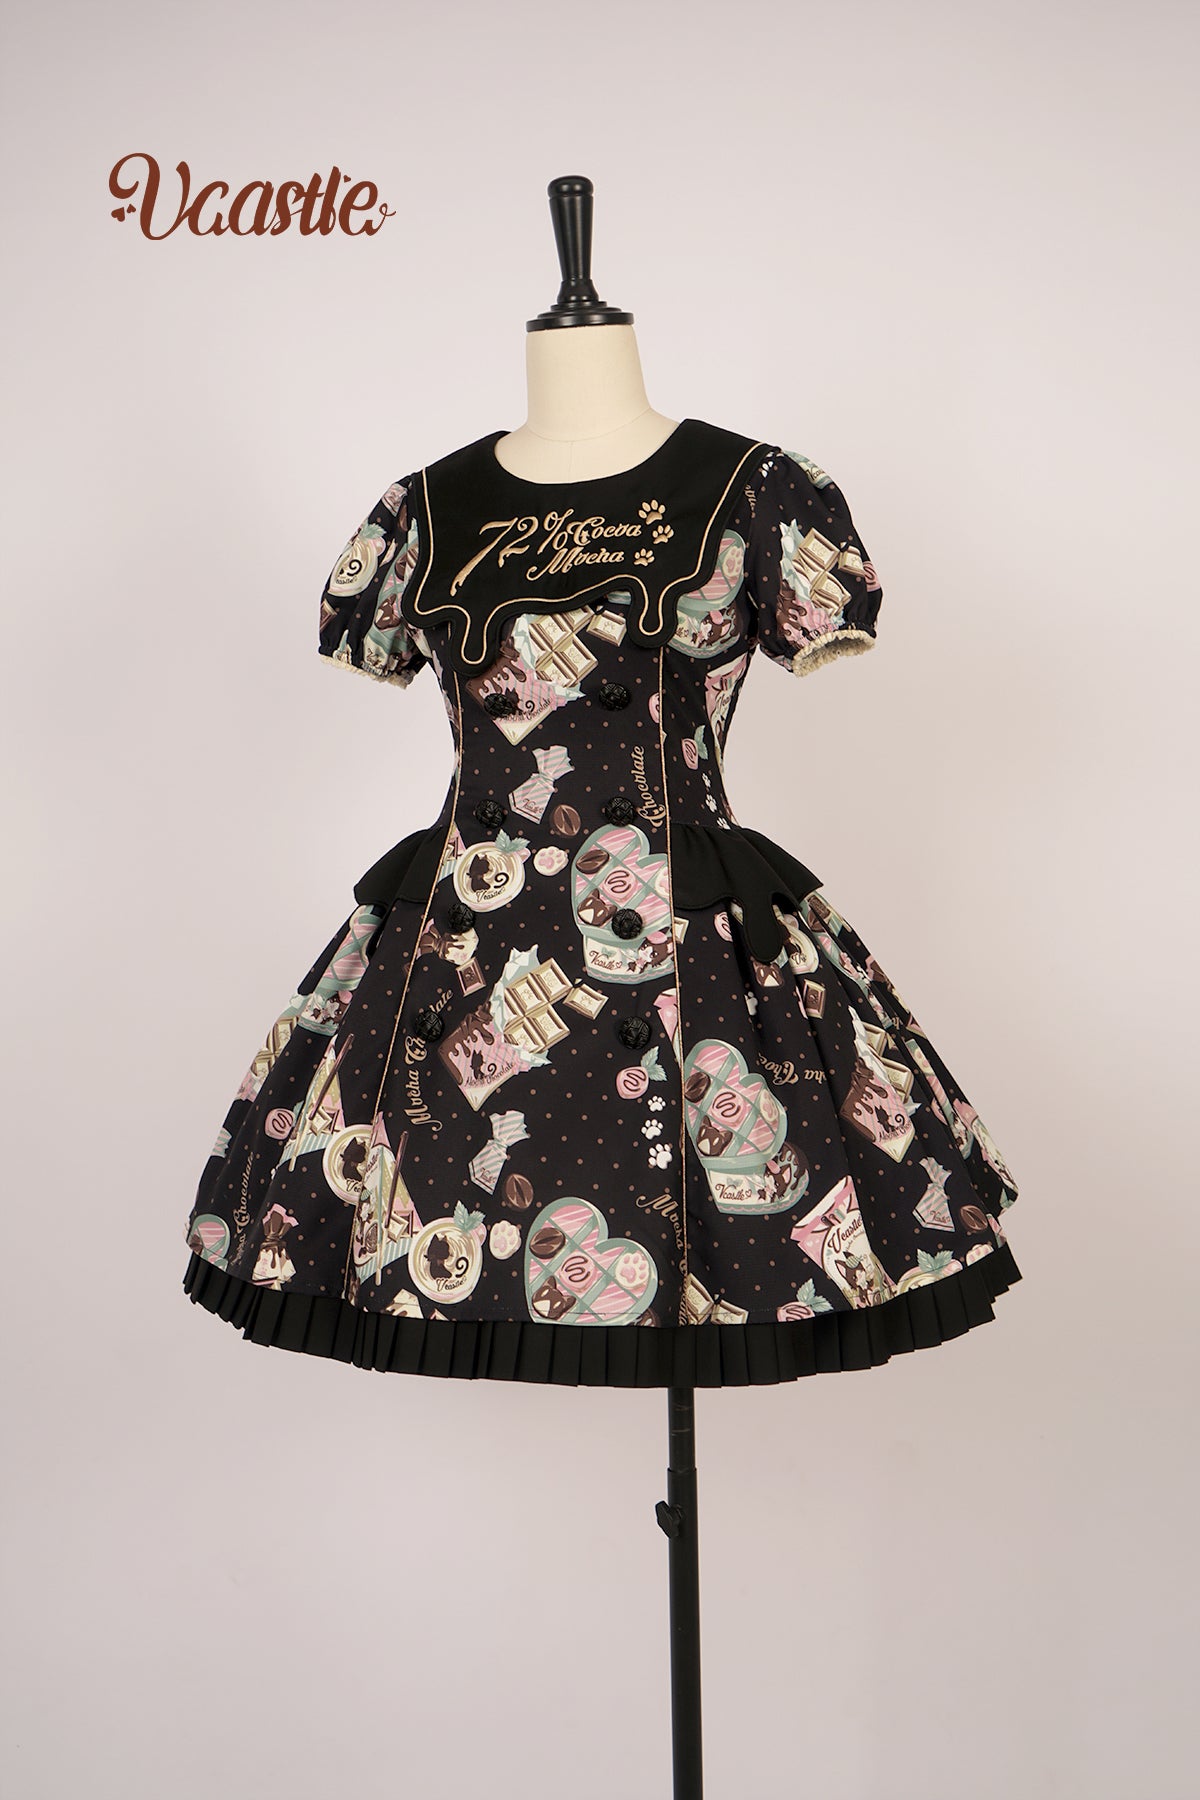 Vcastle~Mocha Choc~Kawaii Lolita OP Dress Multicolors S black OP 